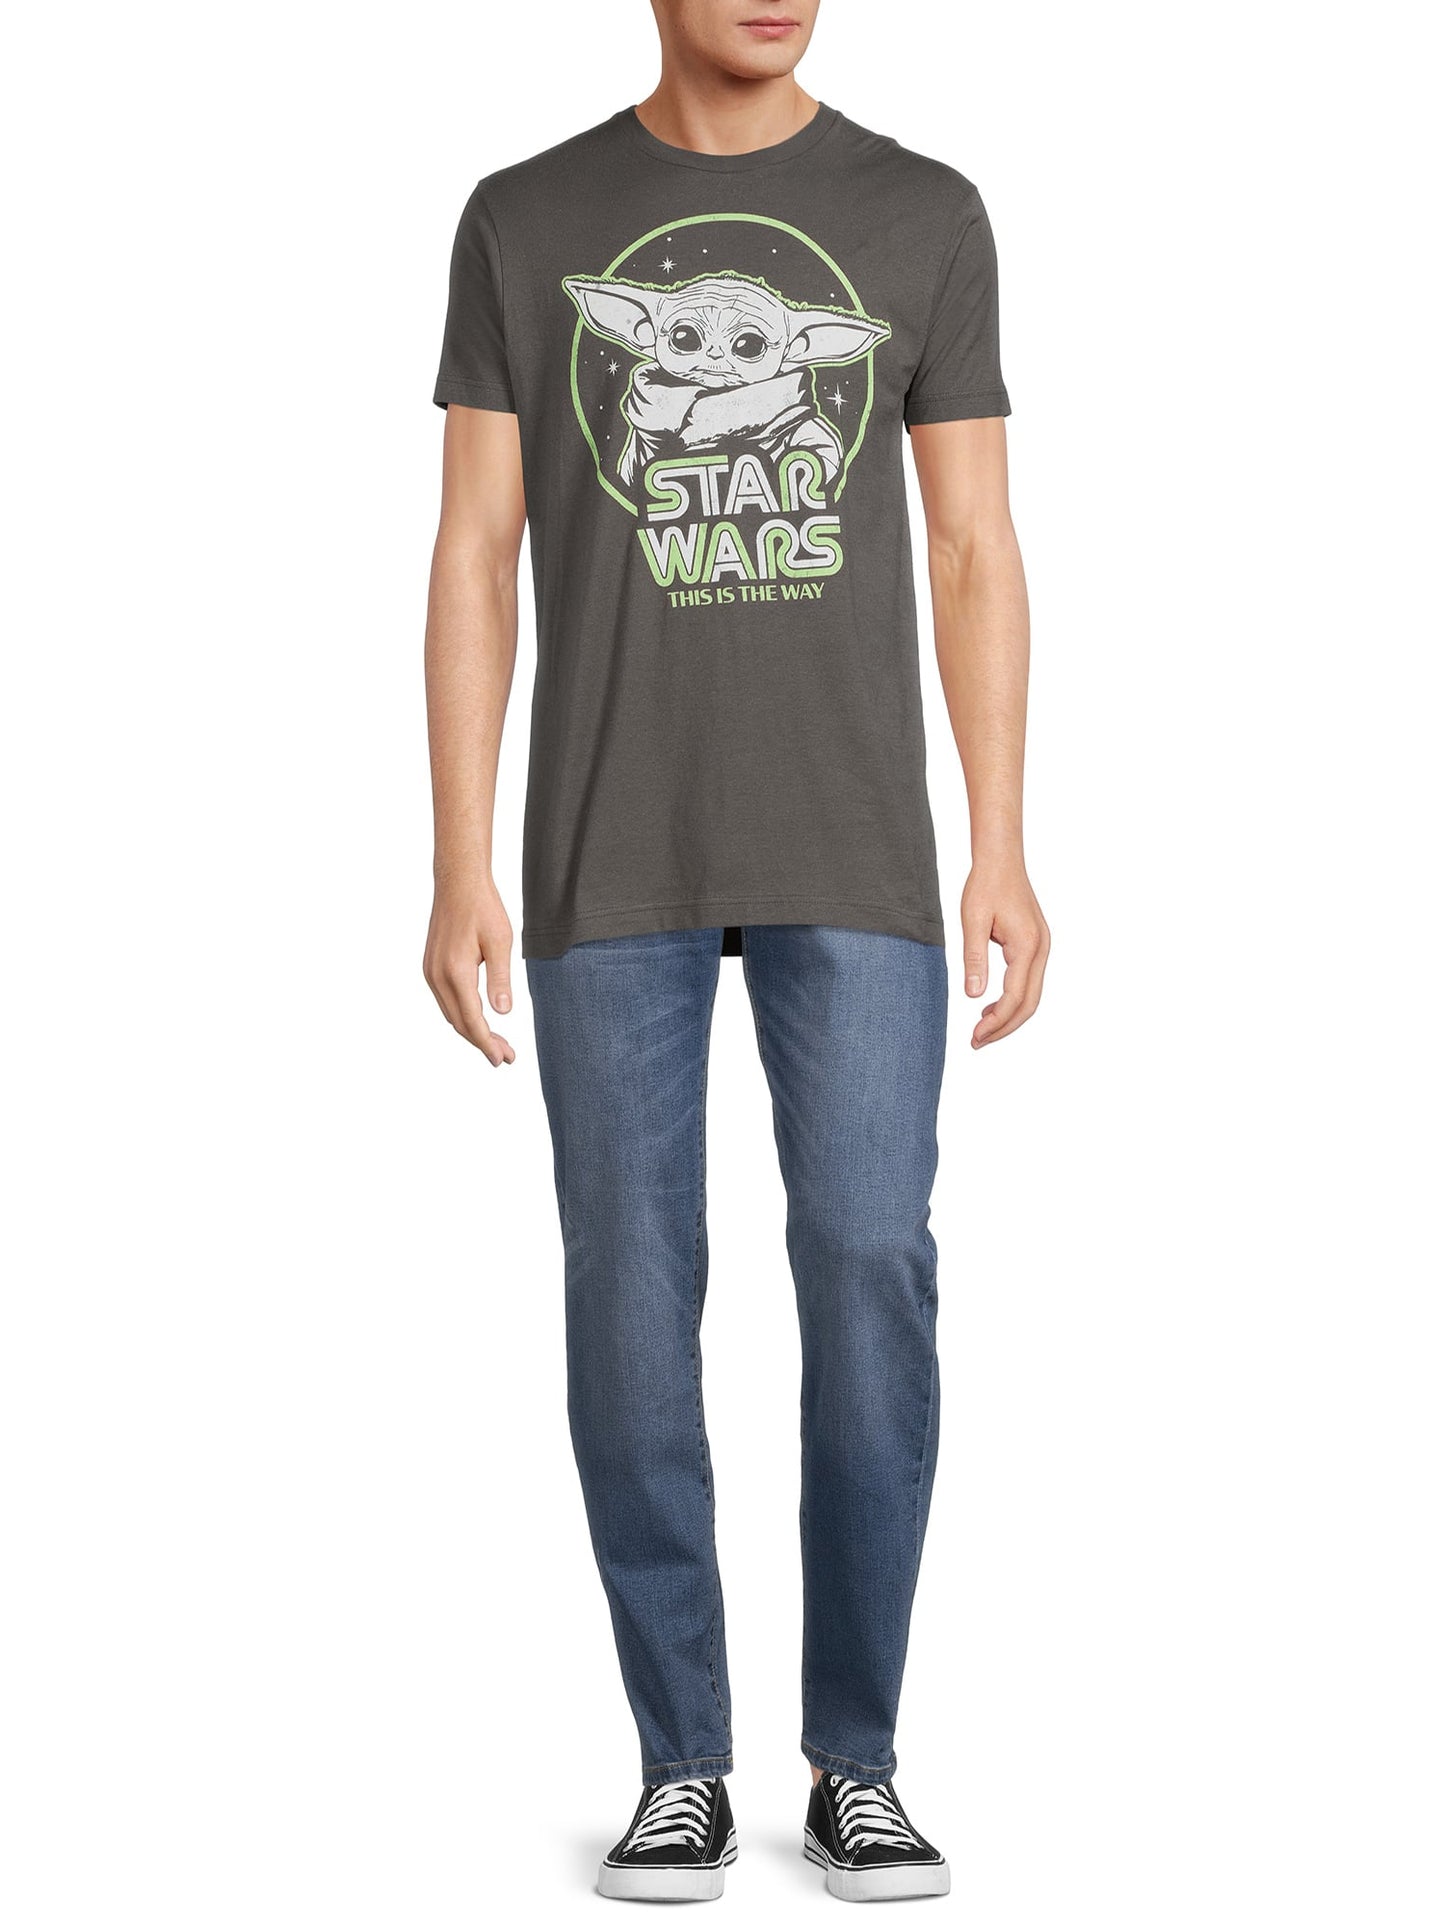 スターウォーズ Tシャツ Star Wars Men's Retro Roundup Graphic Tee with Short Sleeves